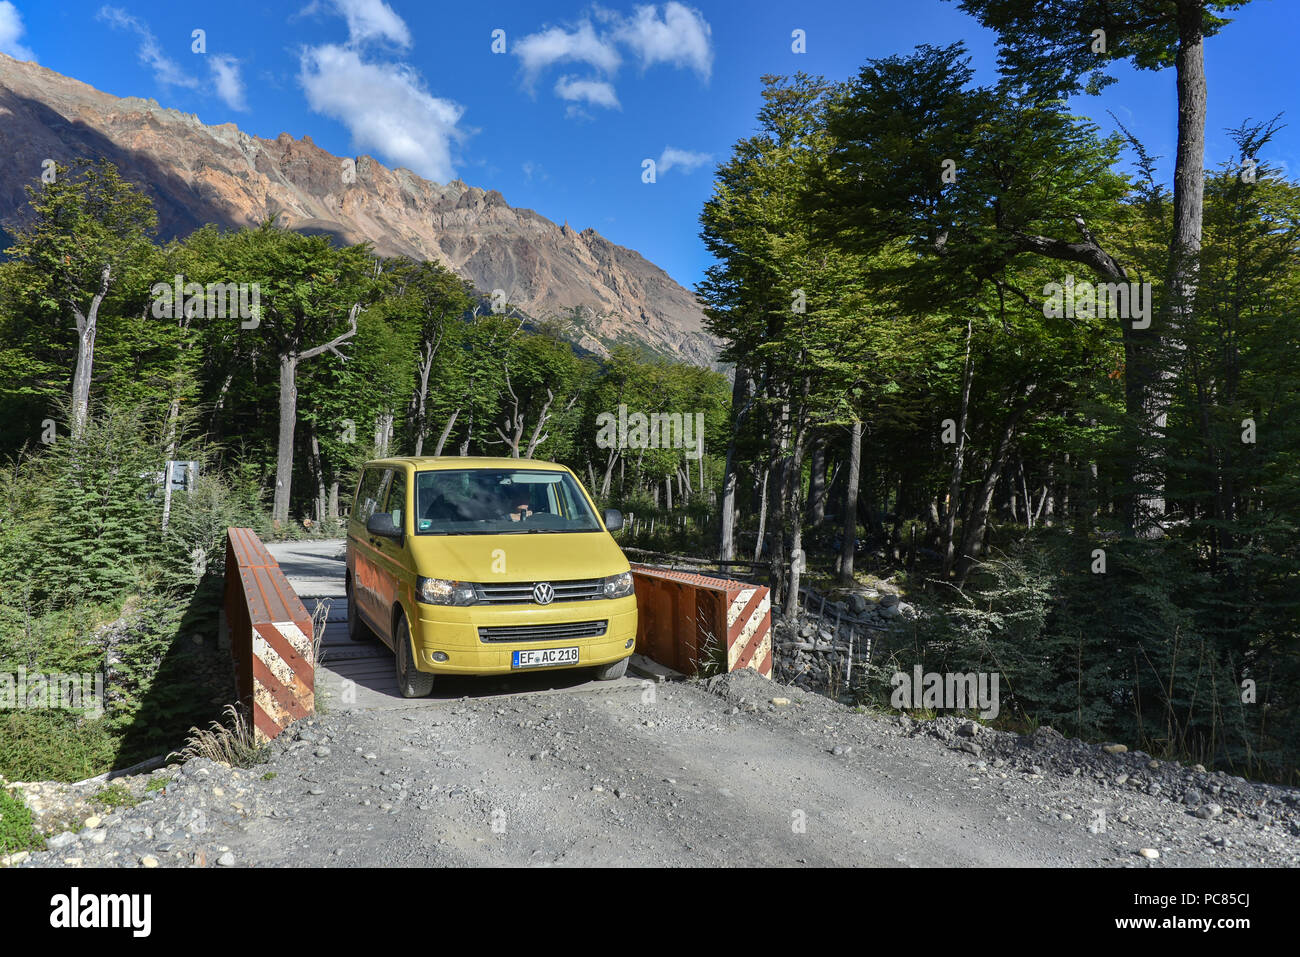 Yellow travel minibus on road to Lago del Desierto at Rio de las Vueltas, near El Chalten, Patagonia, Argentina, South America Stock Photo